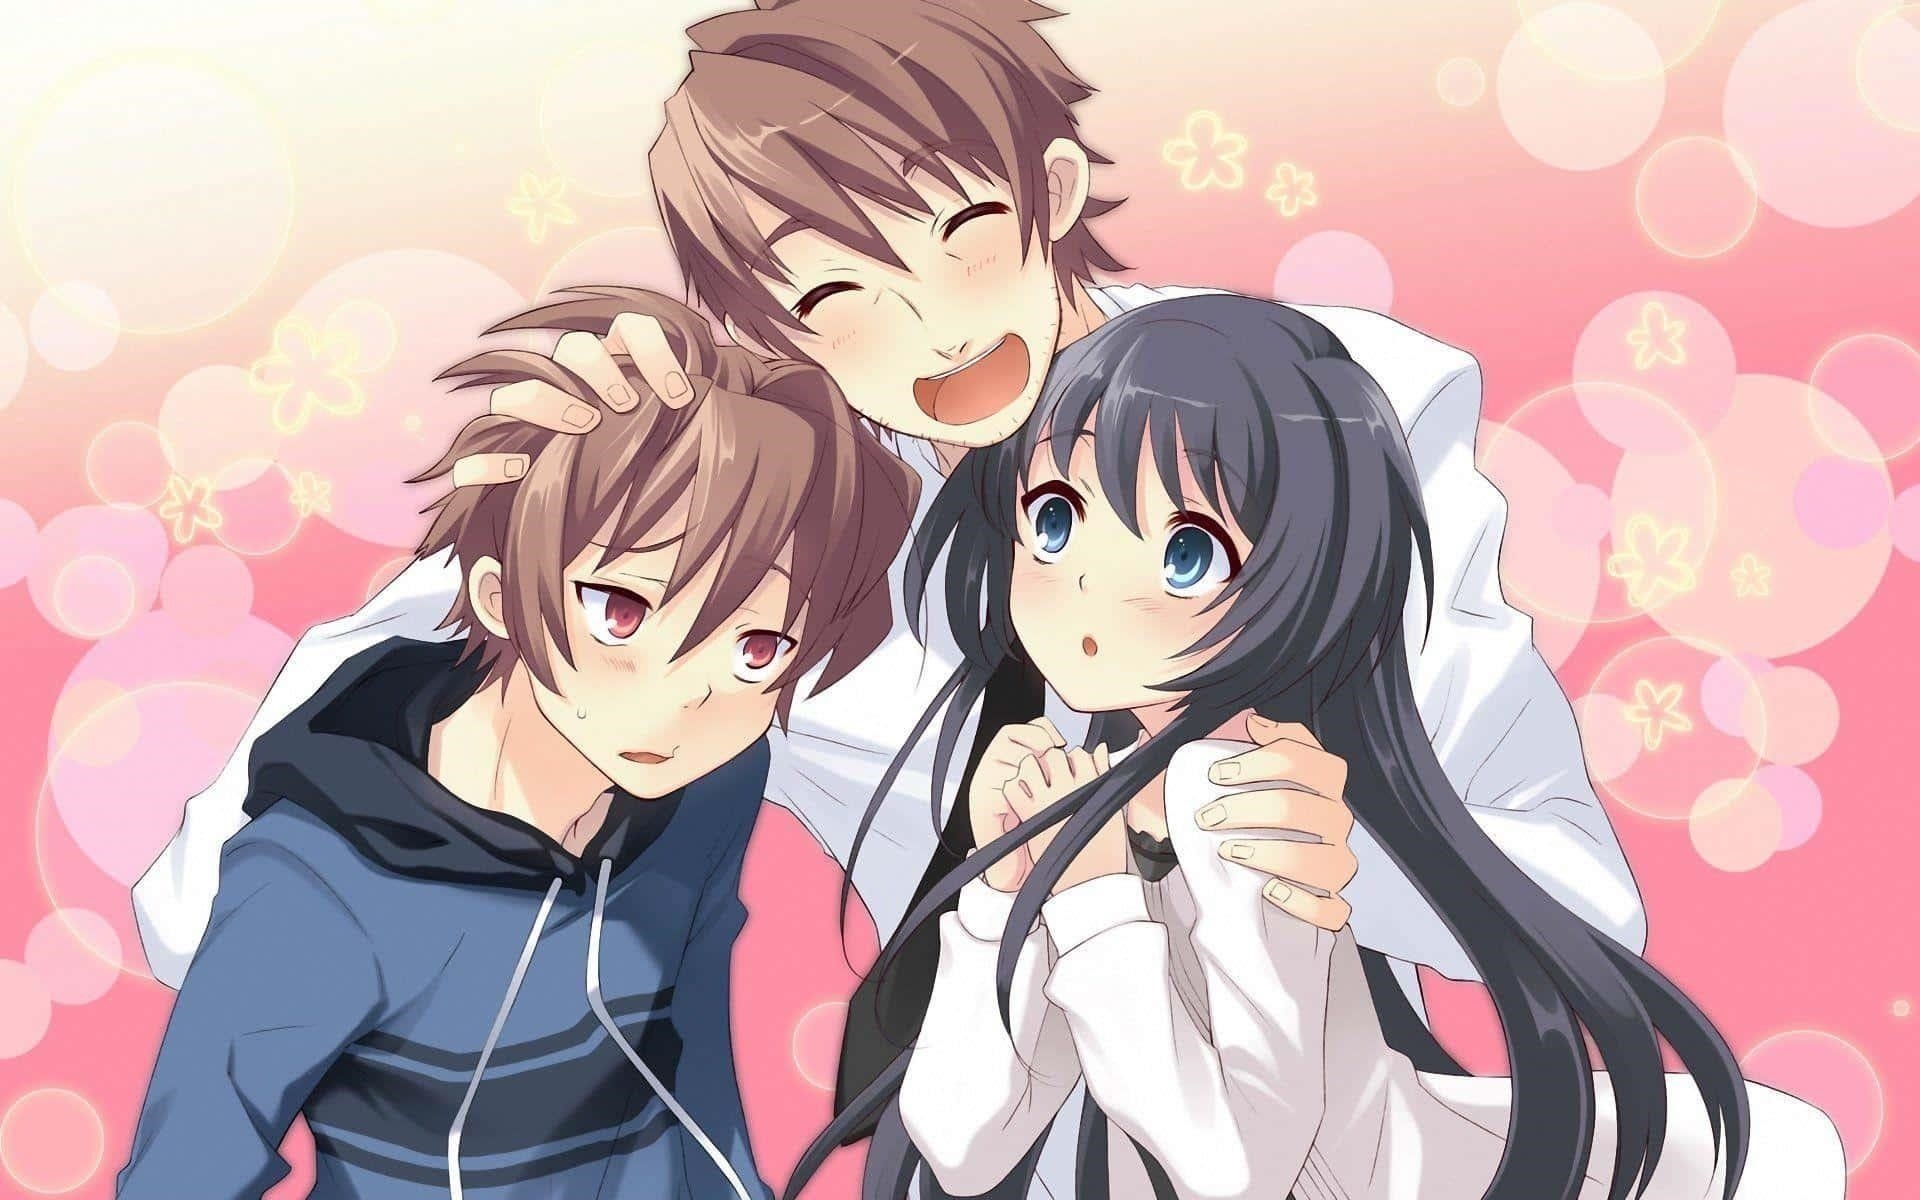 Hình ảnh của một nhóm Anime gồm hai chàng trai và một cô gái đáng yêu nhất.